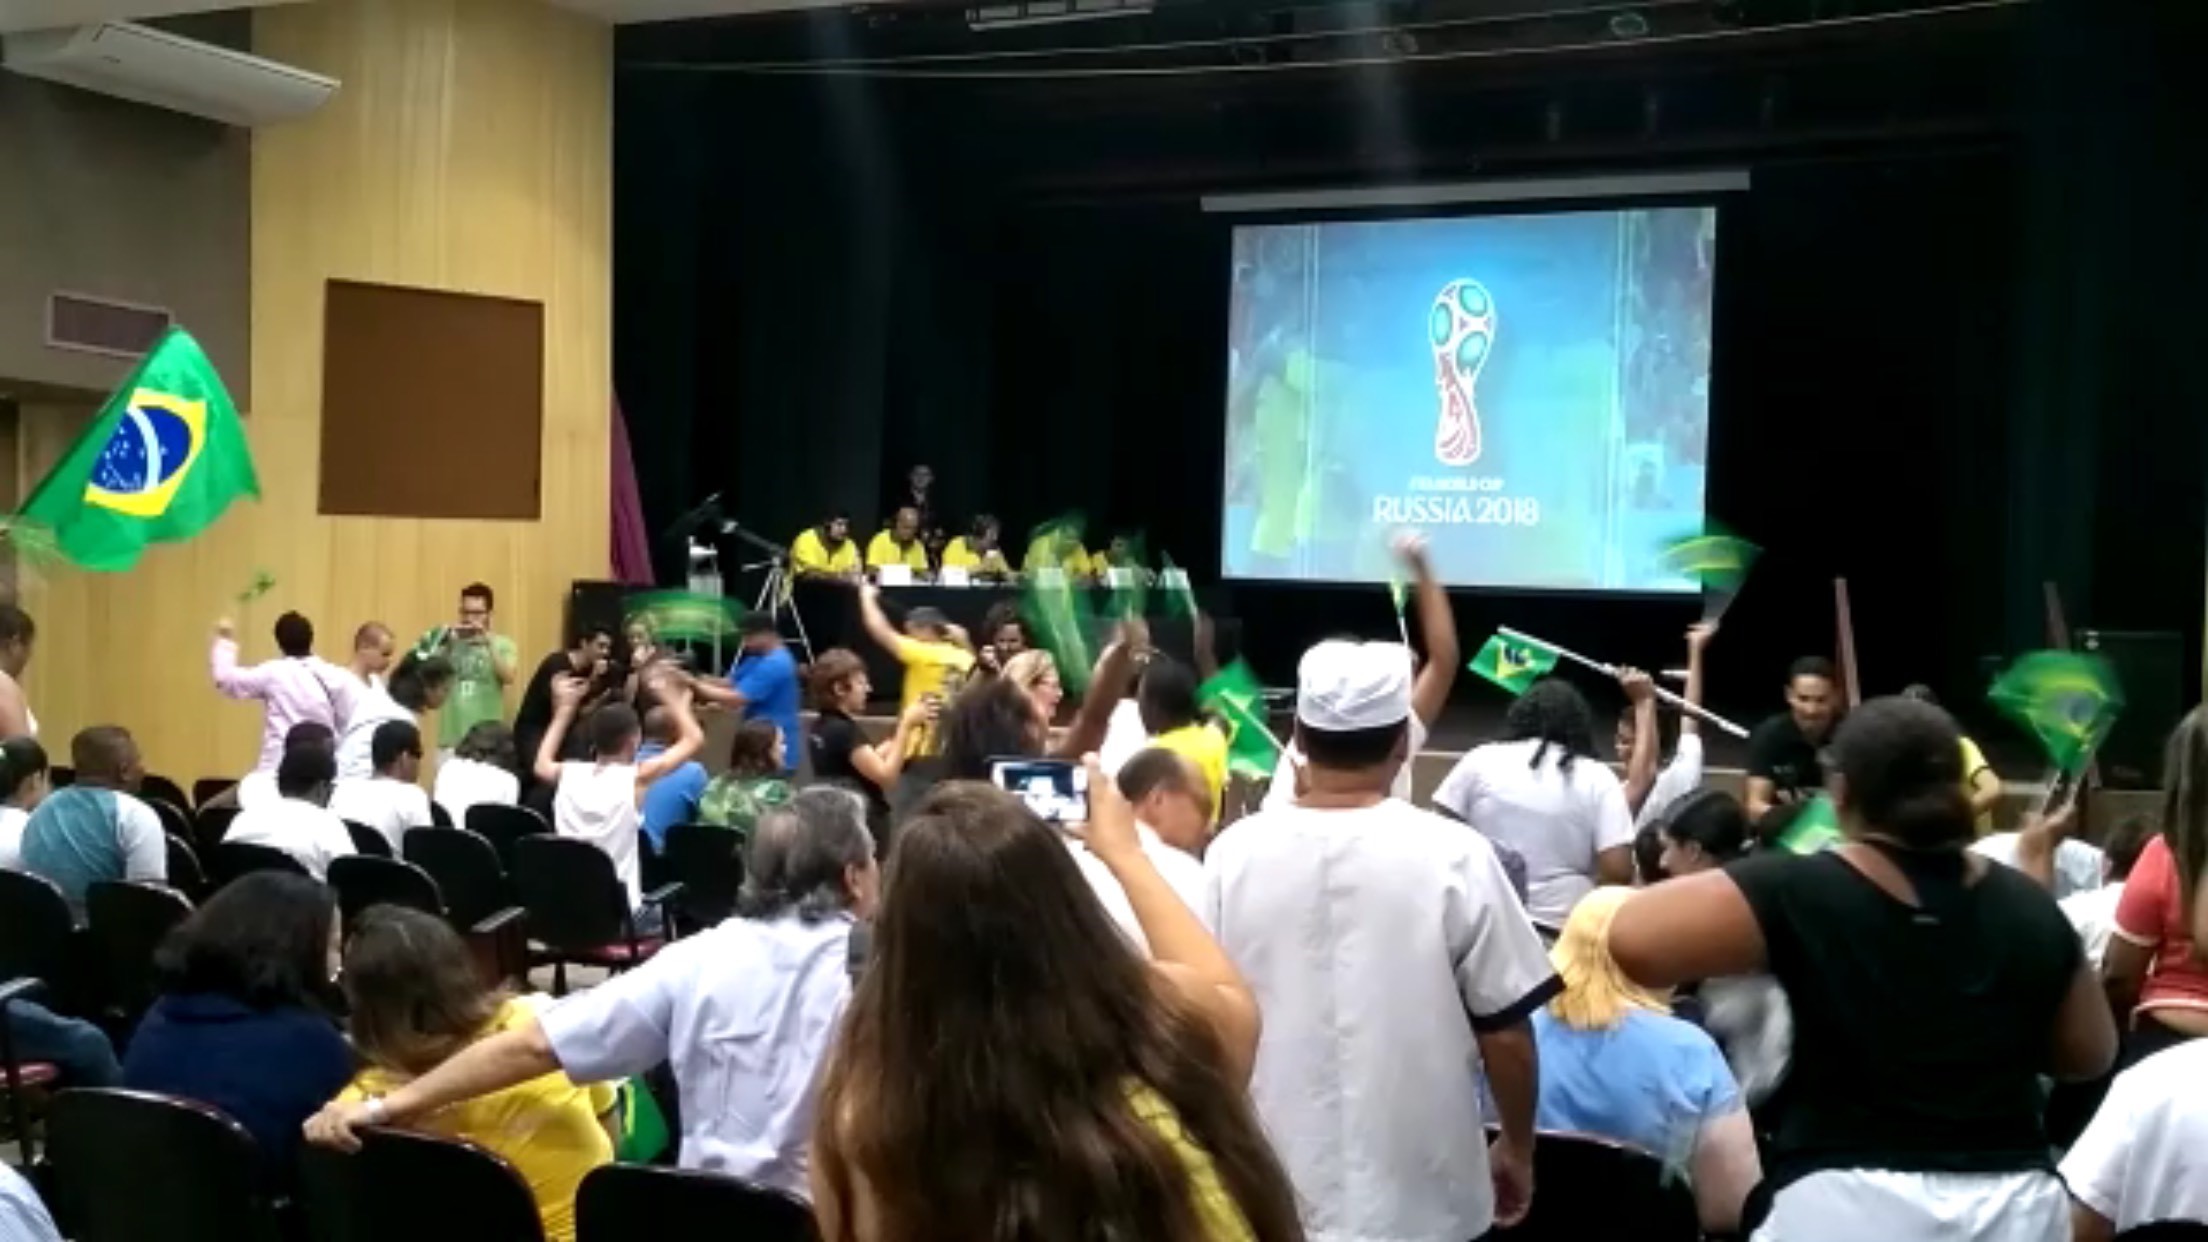 Plateia do Teatro Benjamin Constant bastante cheia de crianças e adultos de frente para o palco, com bandeirinhas do Brasil nas mãos.  No palco, cinco homens de camisetas amarelas, sentados lado a lado a uma mesa retangular virada para o público. Do lado esquerdo deles, um telão em que aparece imagem de uma partida de futebol.